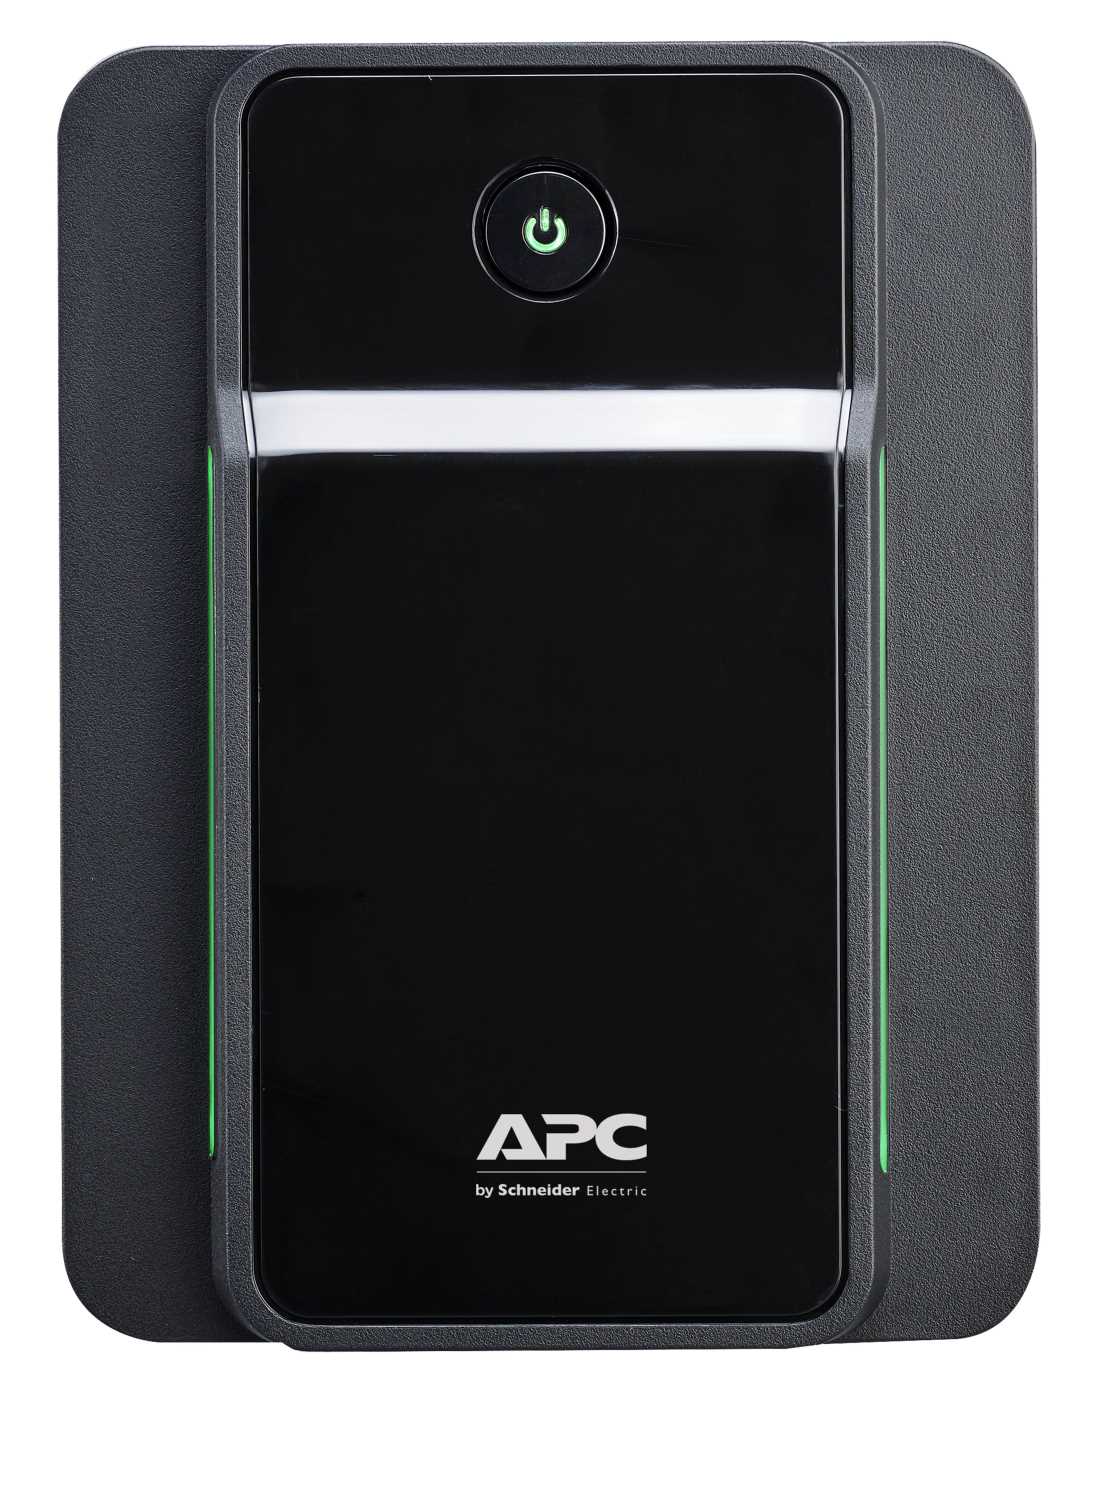 Источник бесперебойного питания APC APC Back-UPS 750VA, 230V, AVR, Schuko Sockets